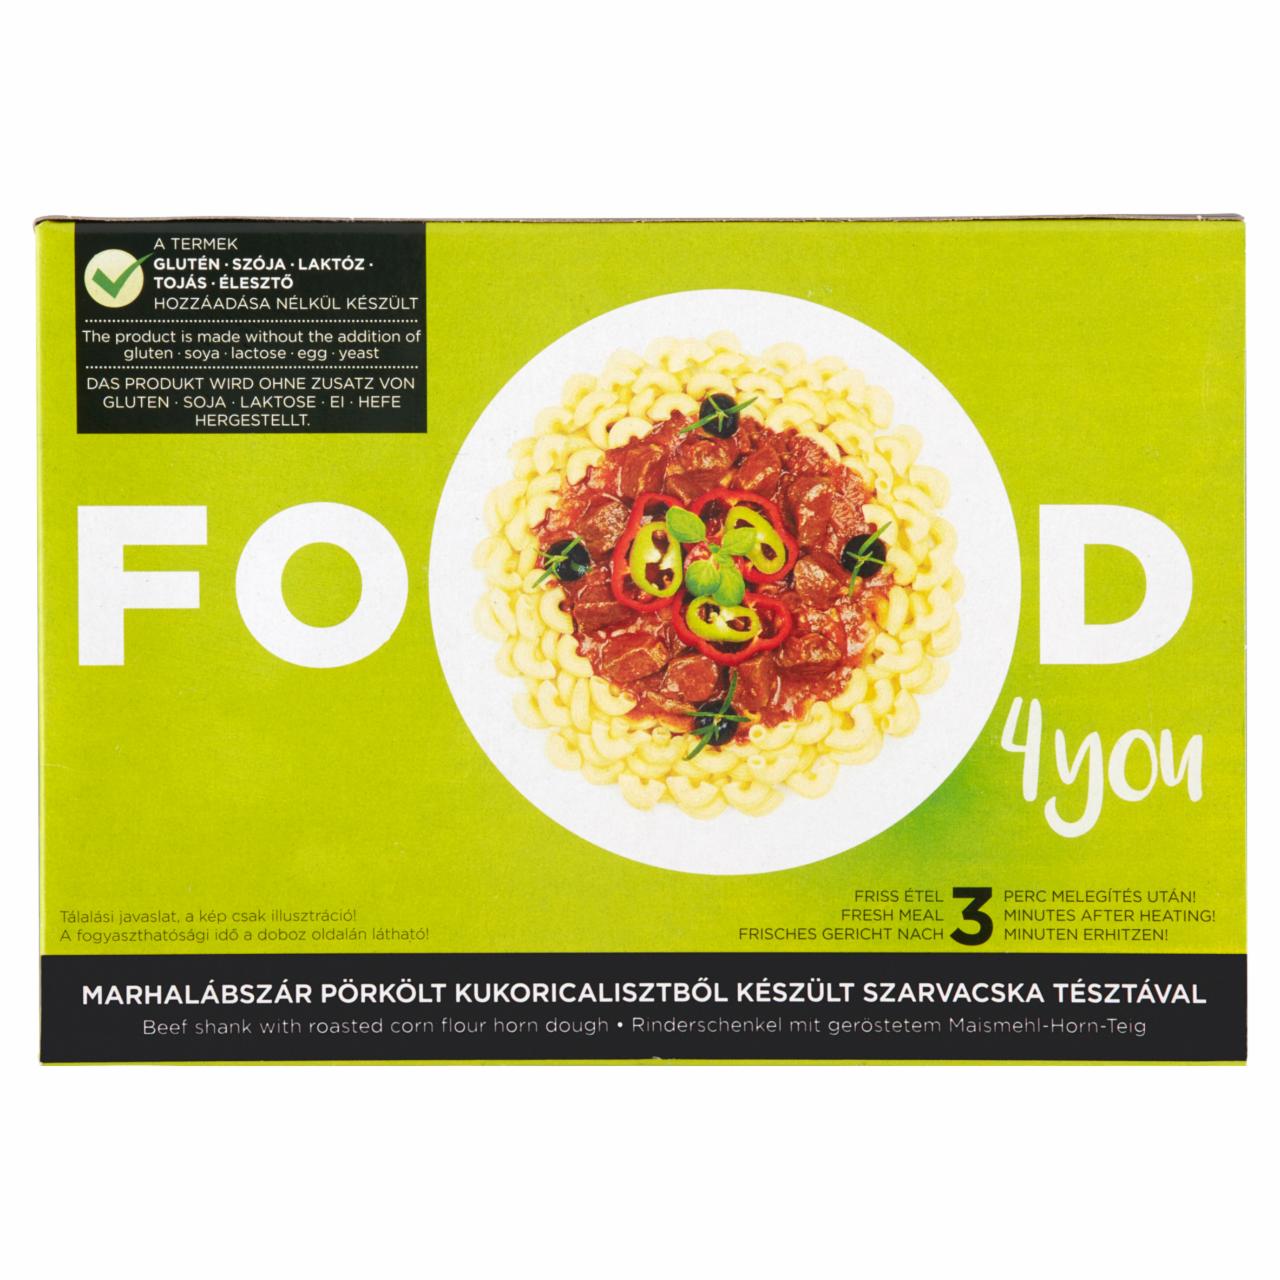 Képek - Food 4 You marhalábszár pörkölt kukoricalisztből készült szarvacska tésztával 330 g